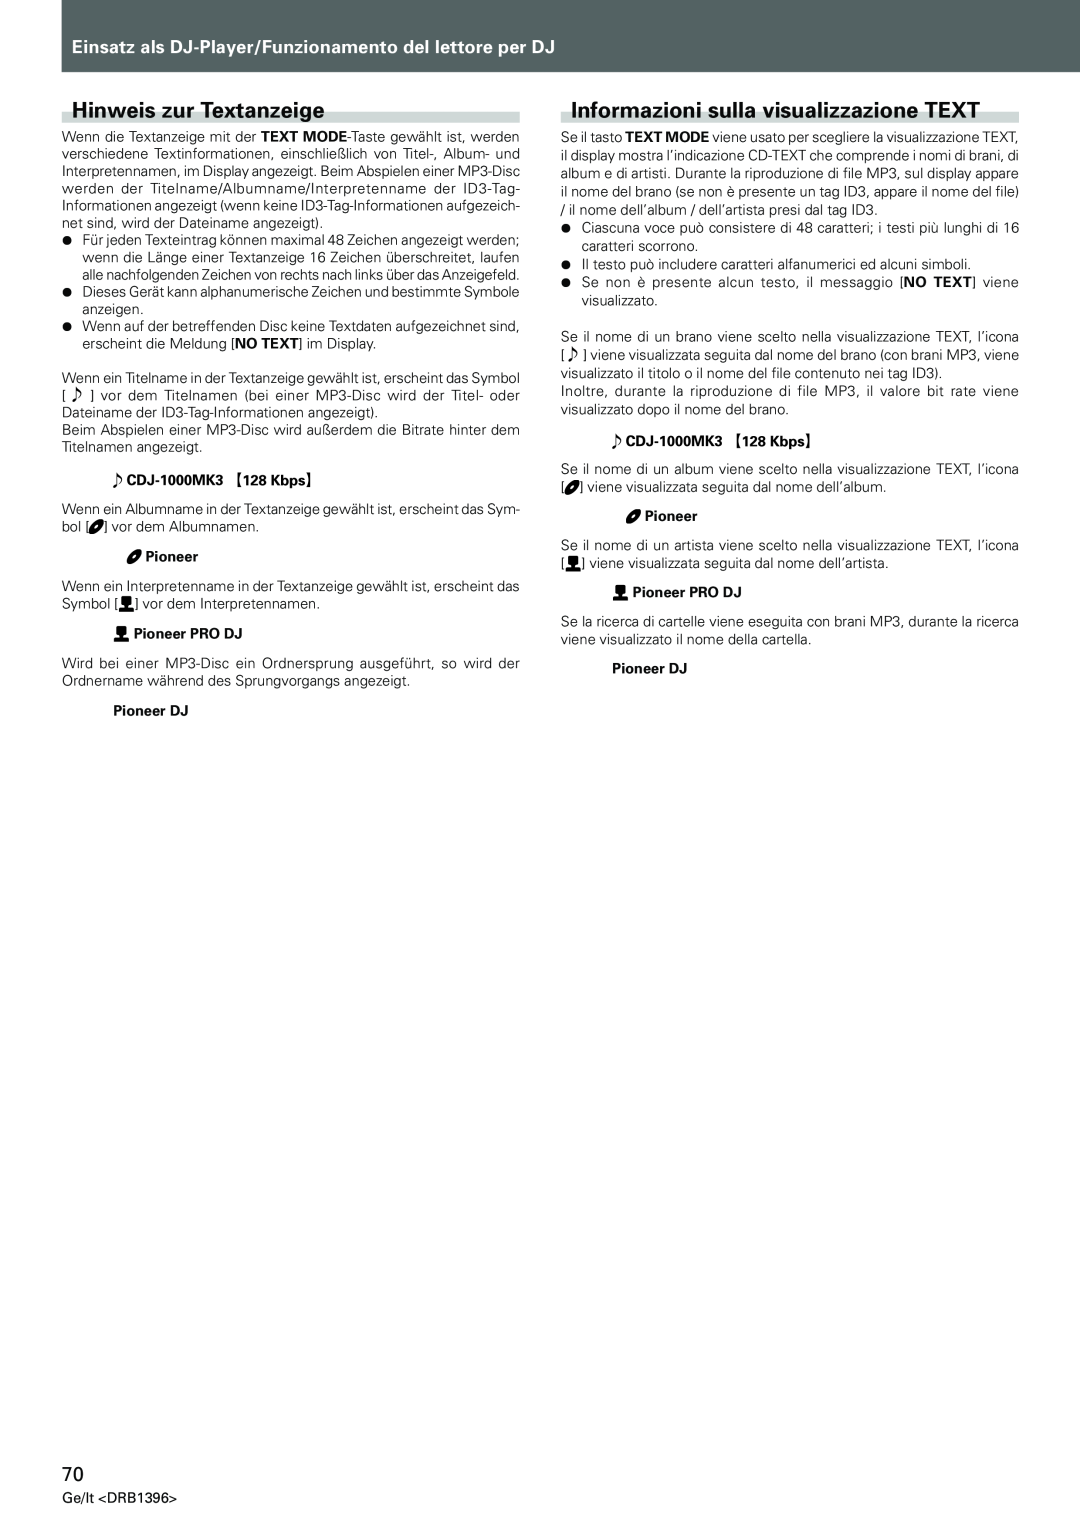 Pioneer CDJ-1000MK3 manual Hinweis zur Textanzeige, Informazioni sulla visualizzazione TEXT 